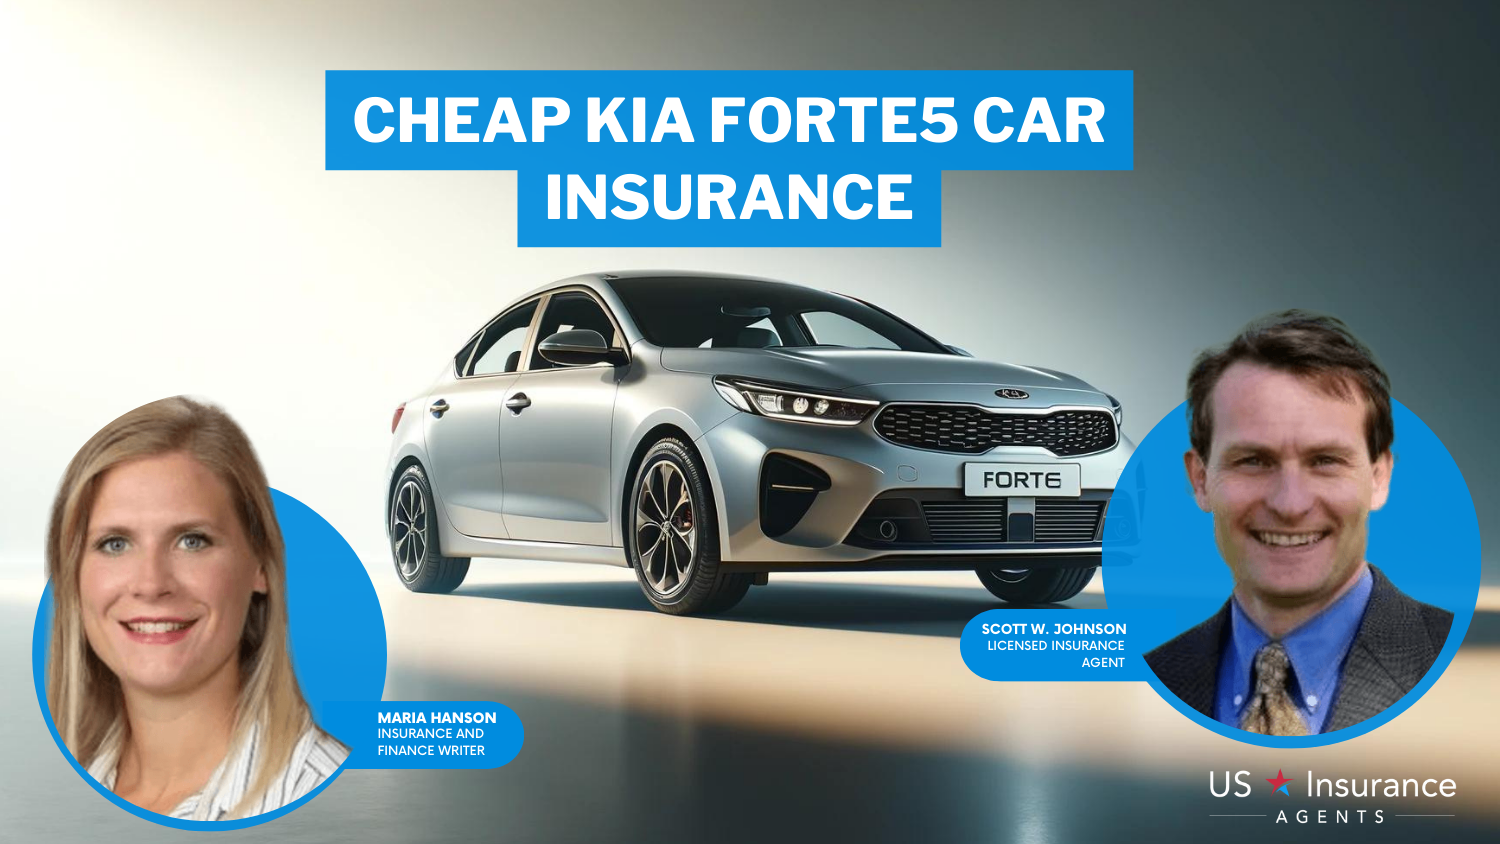 Cheap Kia Forte5 Car Insurance: State Farm, Erie, and Progressive